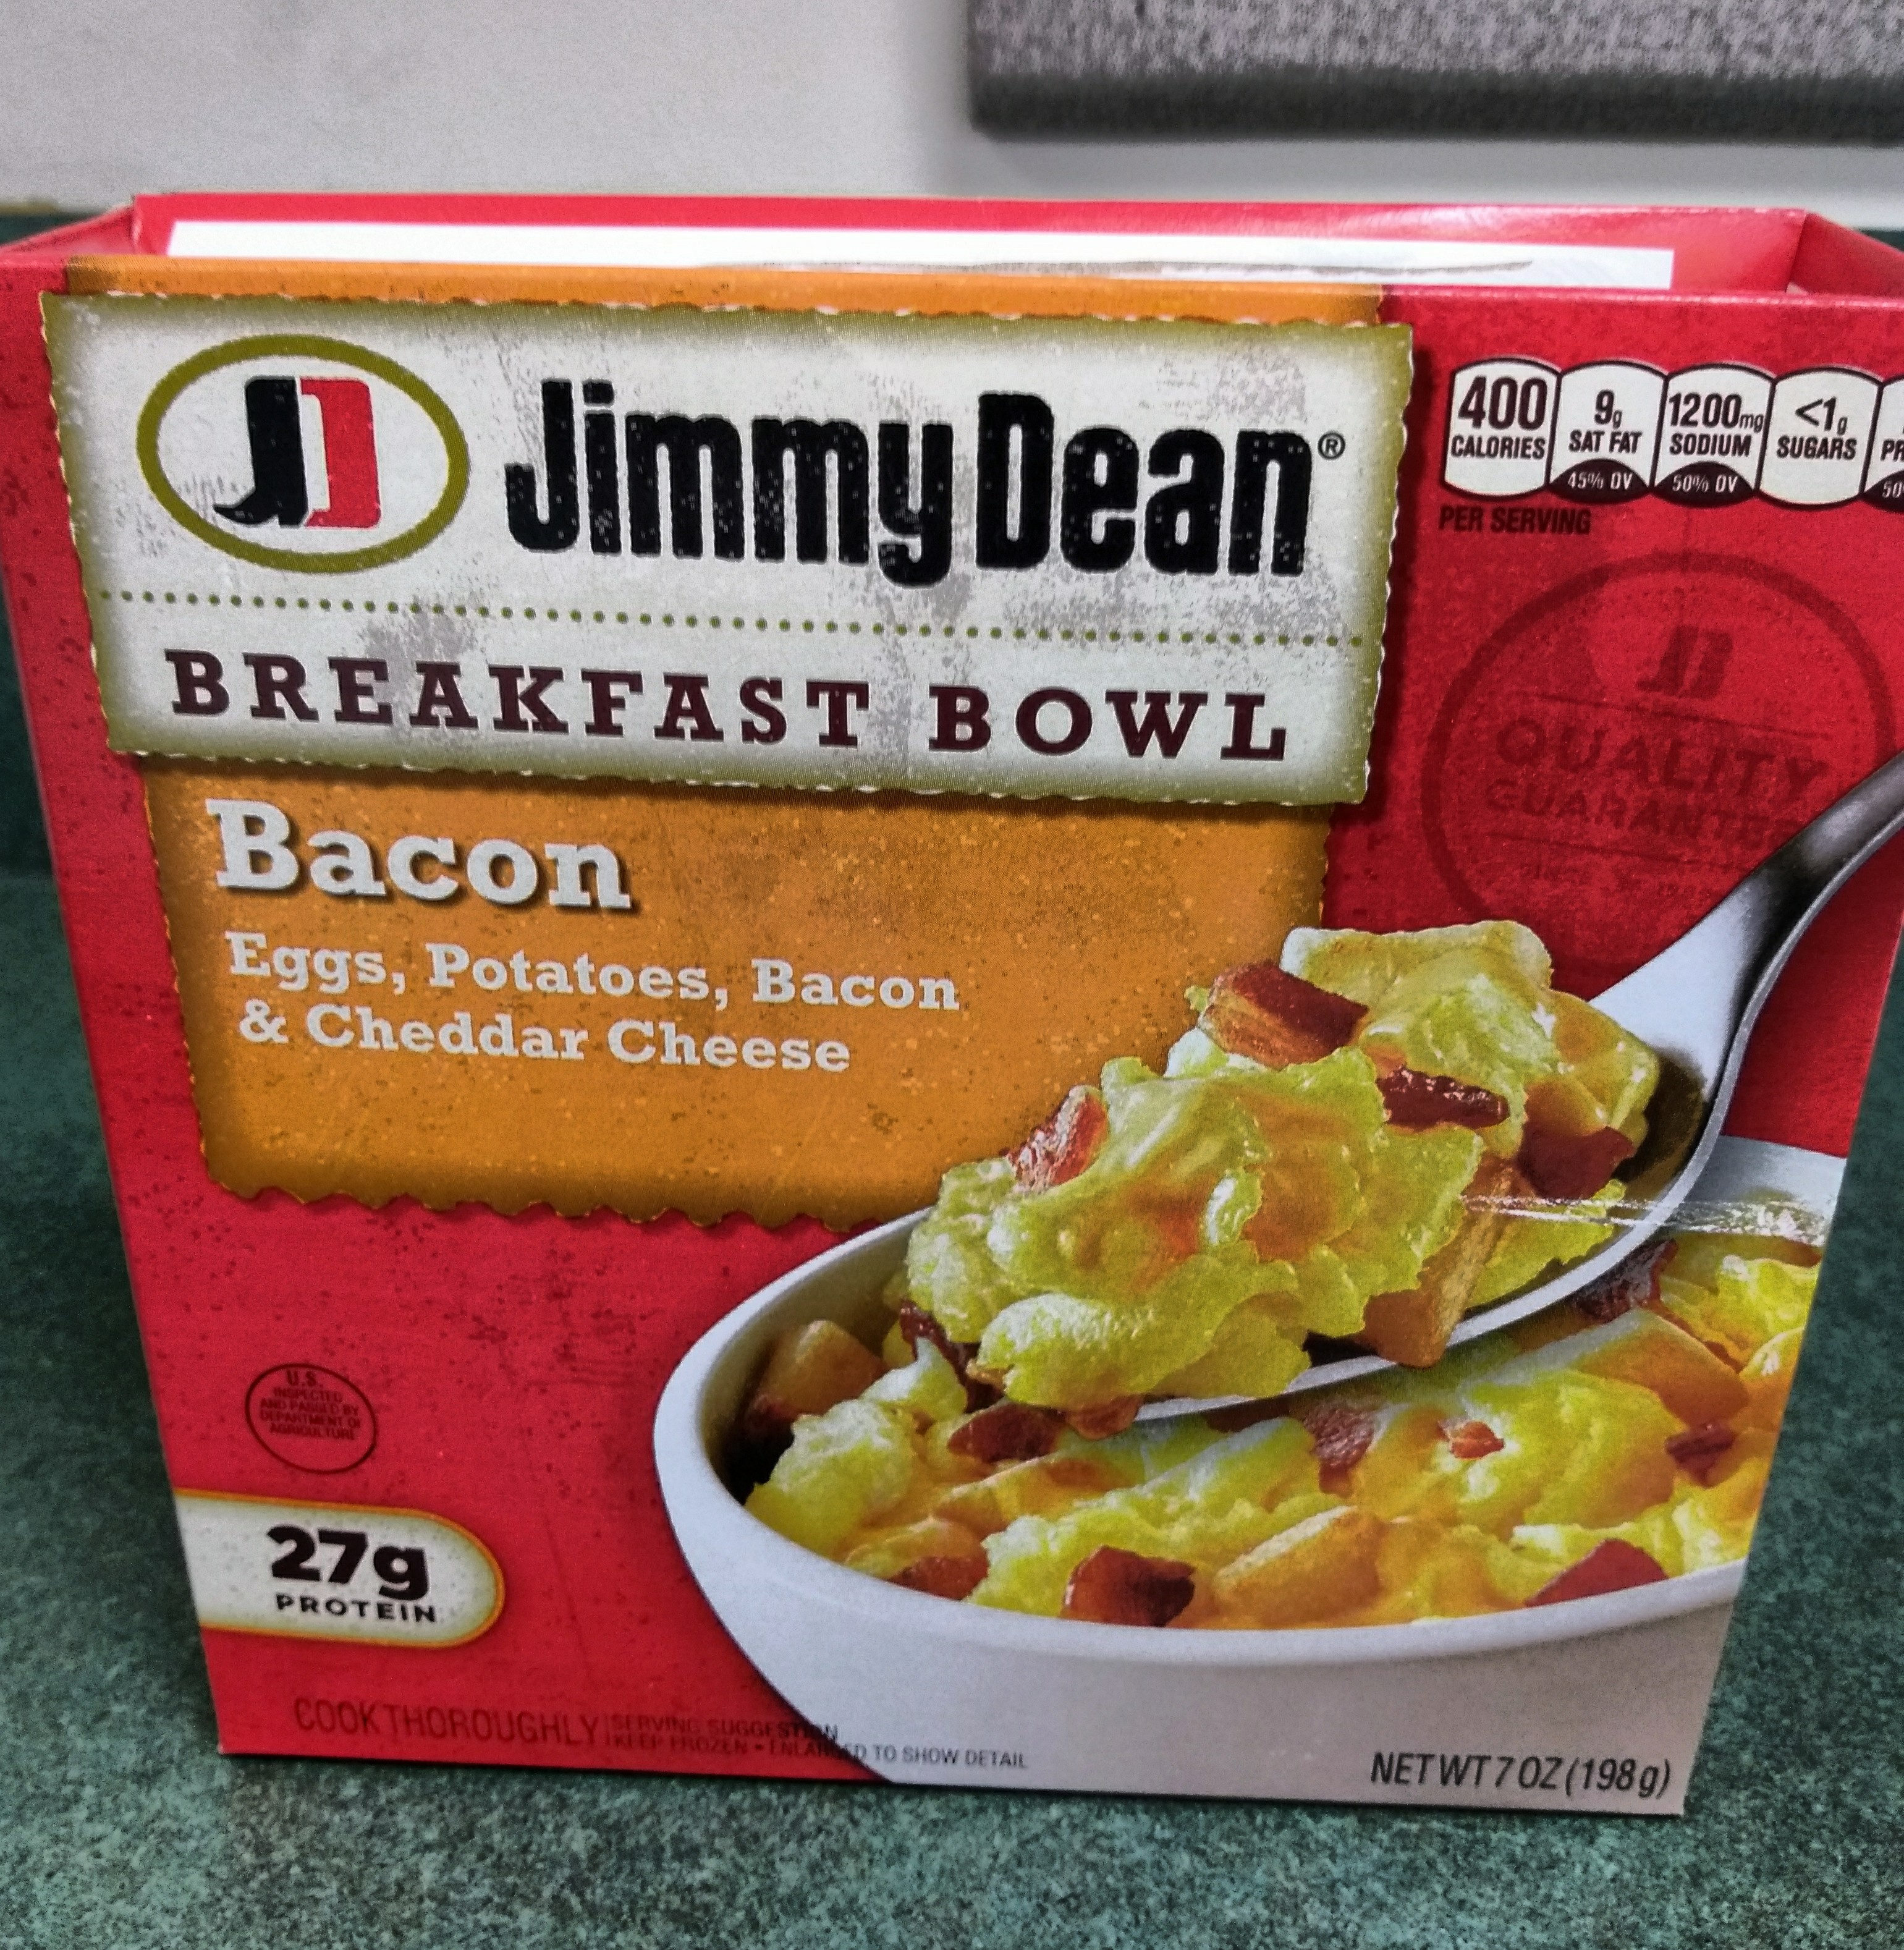 Jimmy dean, breakfast bowl bacon - Product